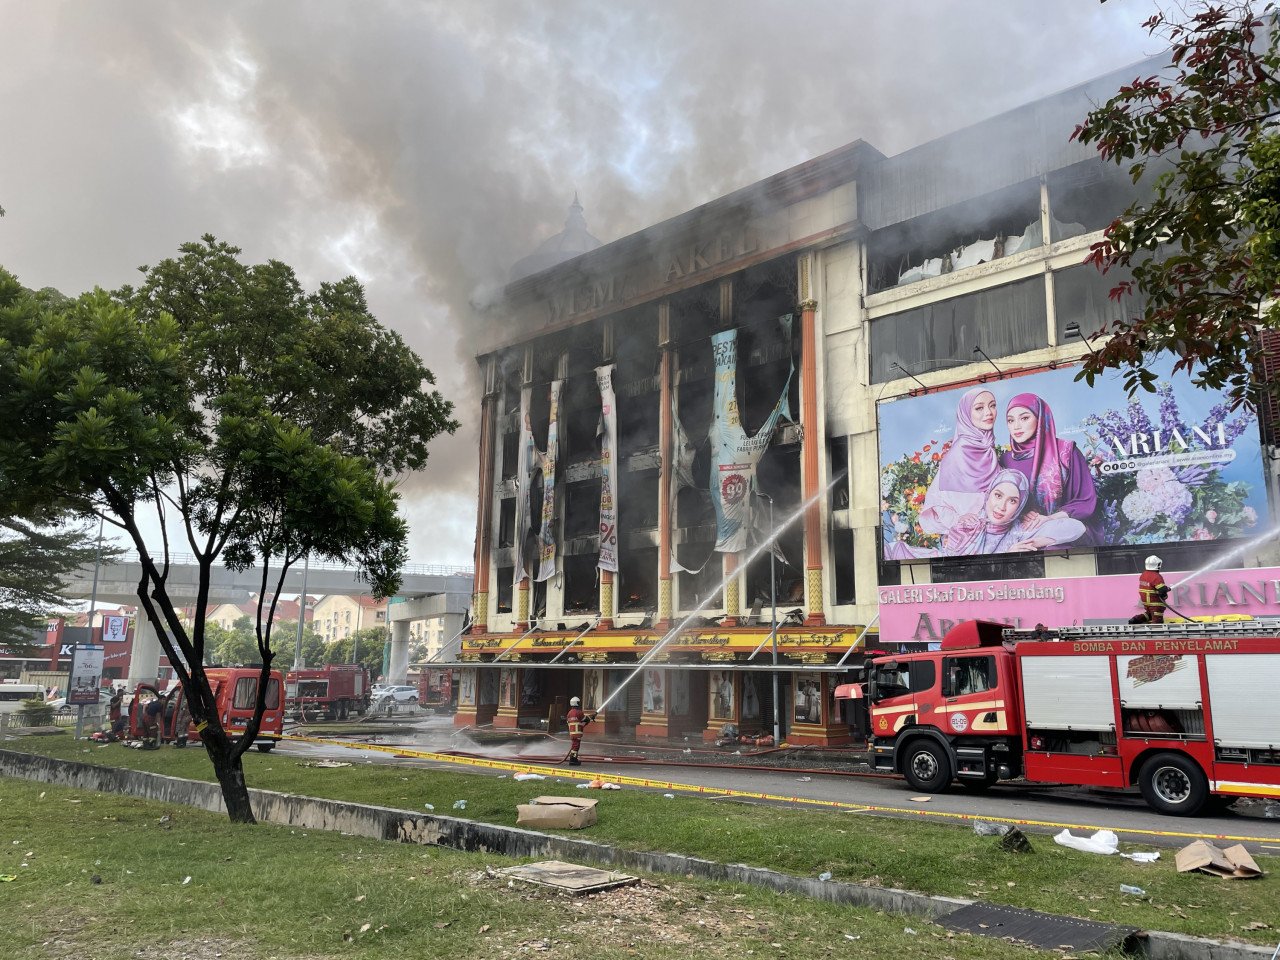 Kebakaran berjaya dikawal dan dipadamkan sepenuhnya setakat jam 10 pagi tadi - Gambar oleh Rahim Nasir